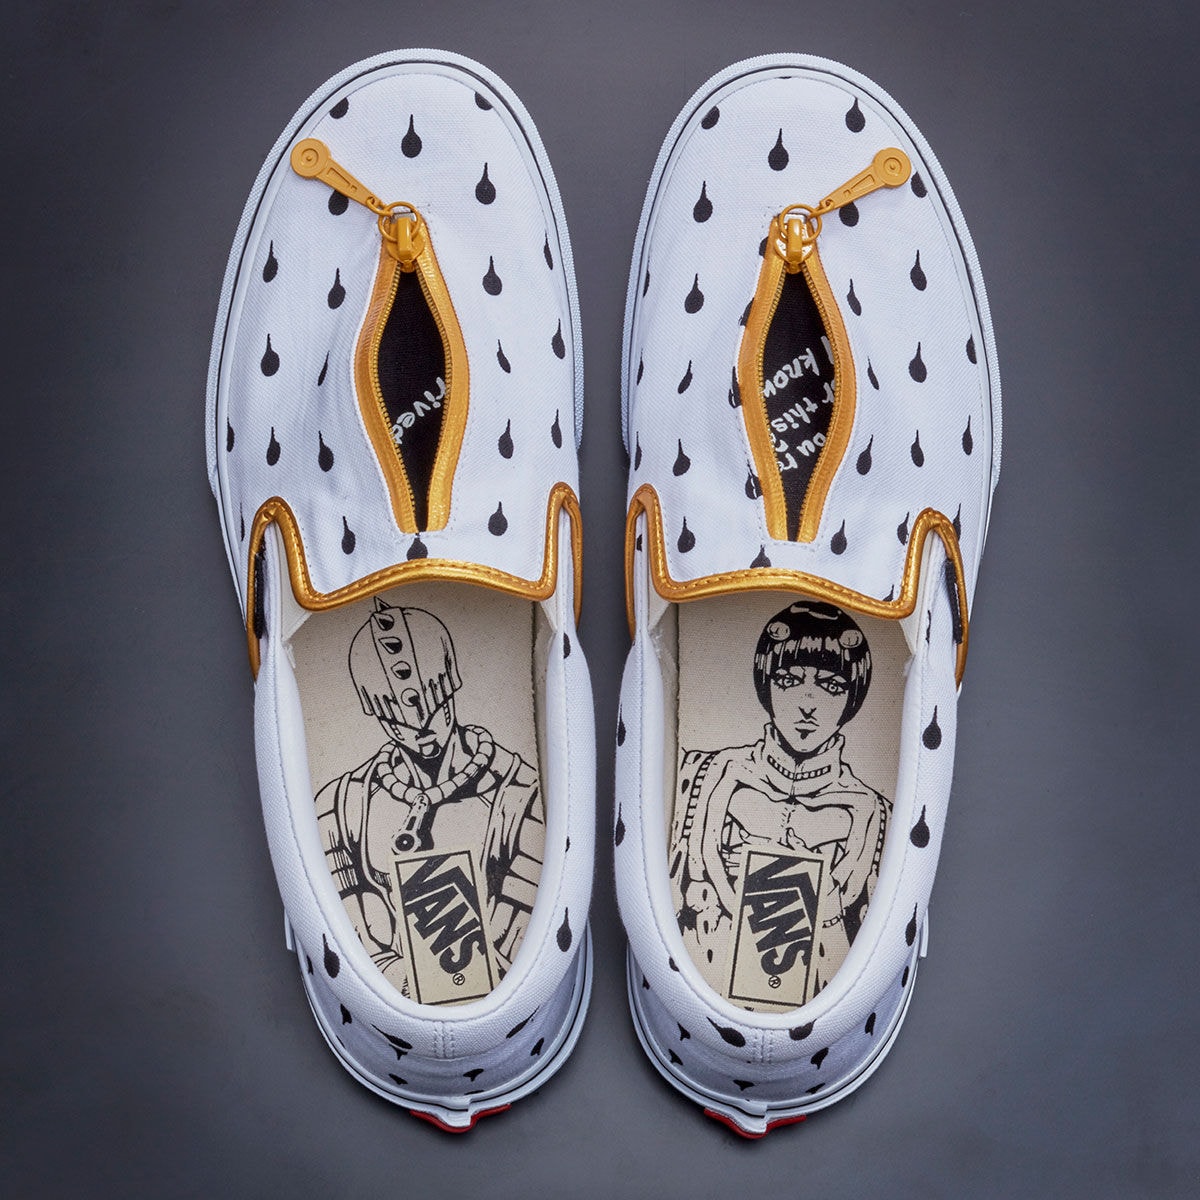 ジョジョの奇妙な冒険 x ヴァンズのコラボフットウェアが登場 Jojo's Bizarre Adventure Golden Wind x Vans Era Pro Slip On Detail Zip Graphic Insoles Collaboration Collection Footwear Sneakers Anime Character Logo 